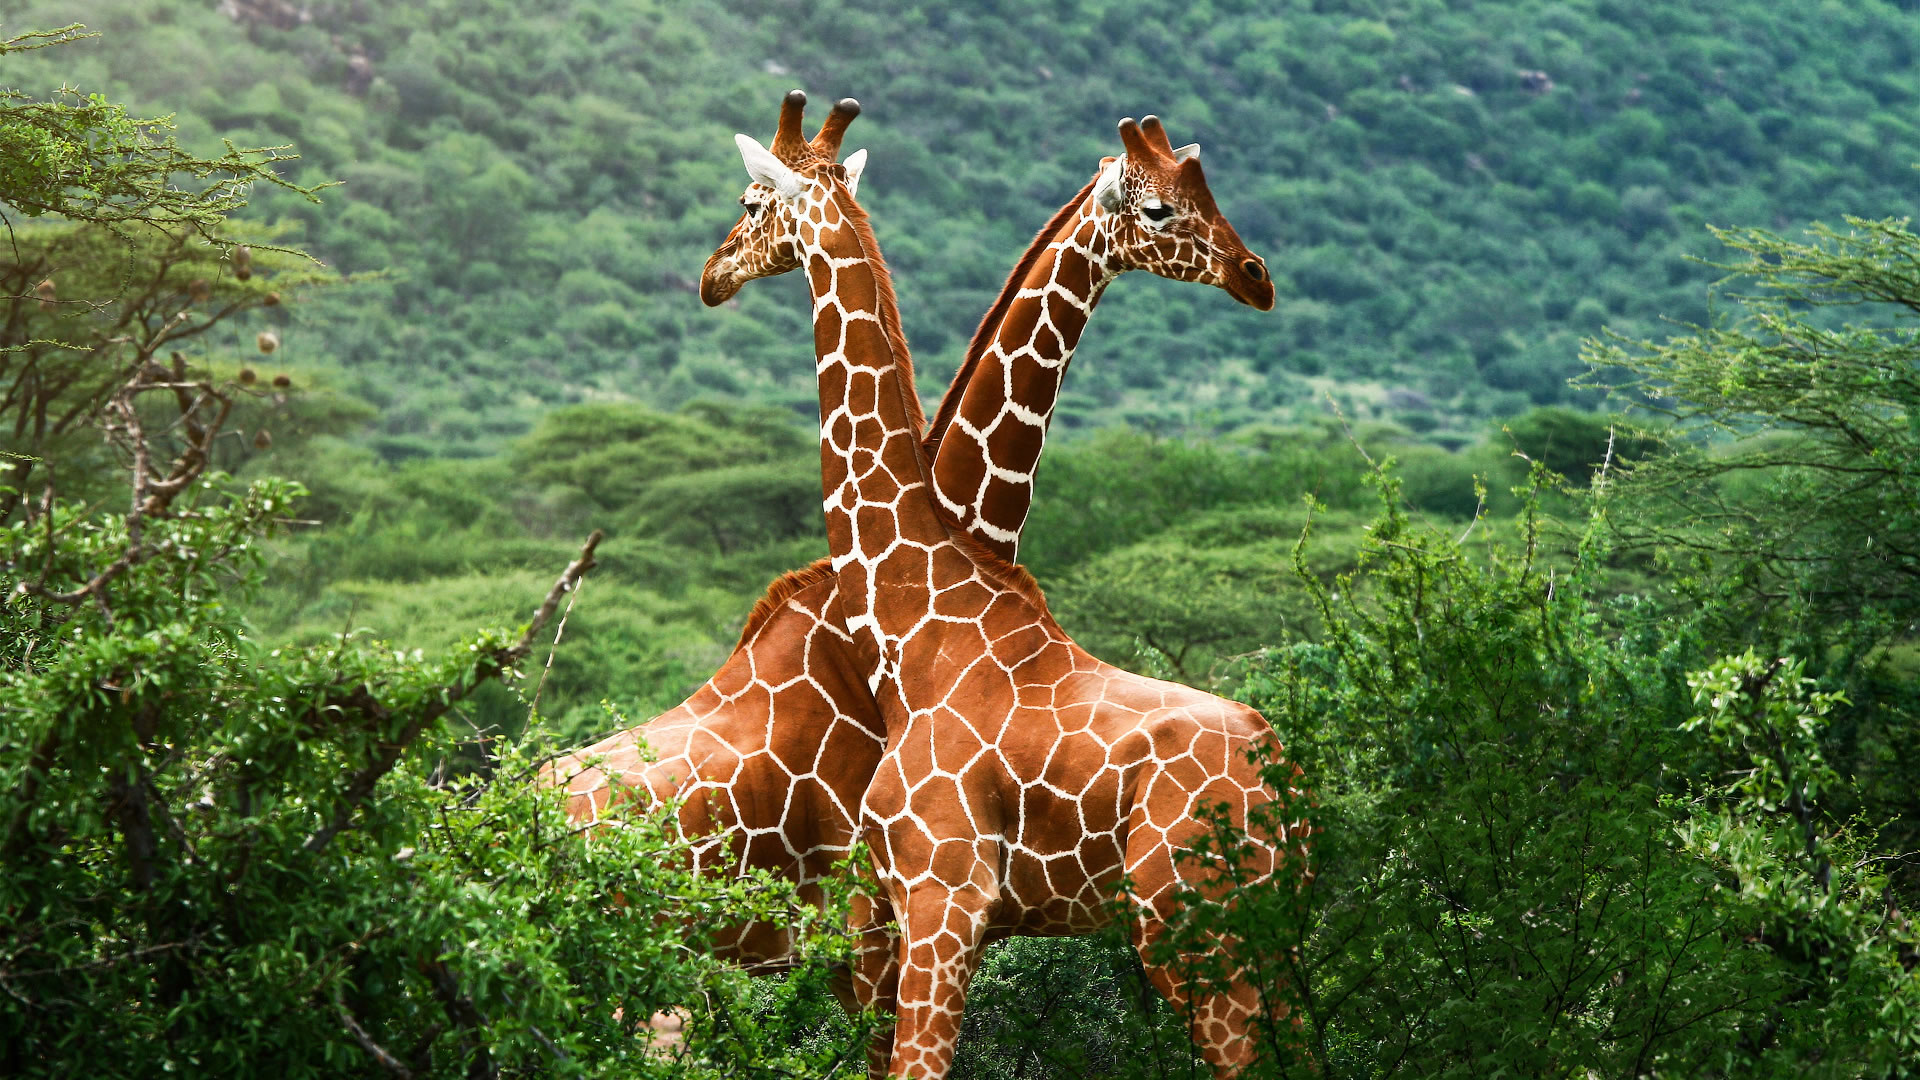 Giraffe-HD-Wallpaper